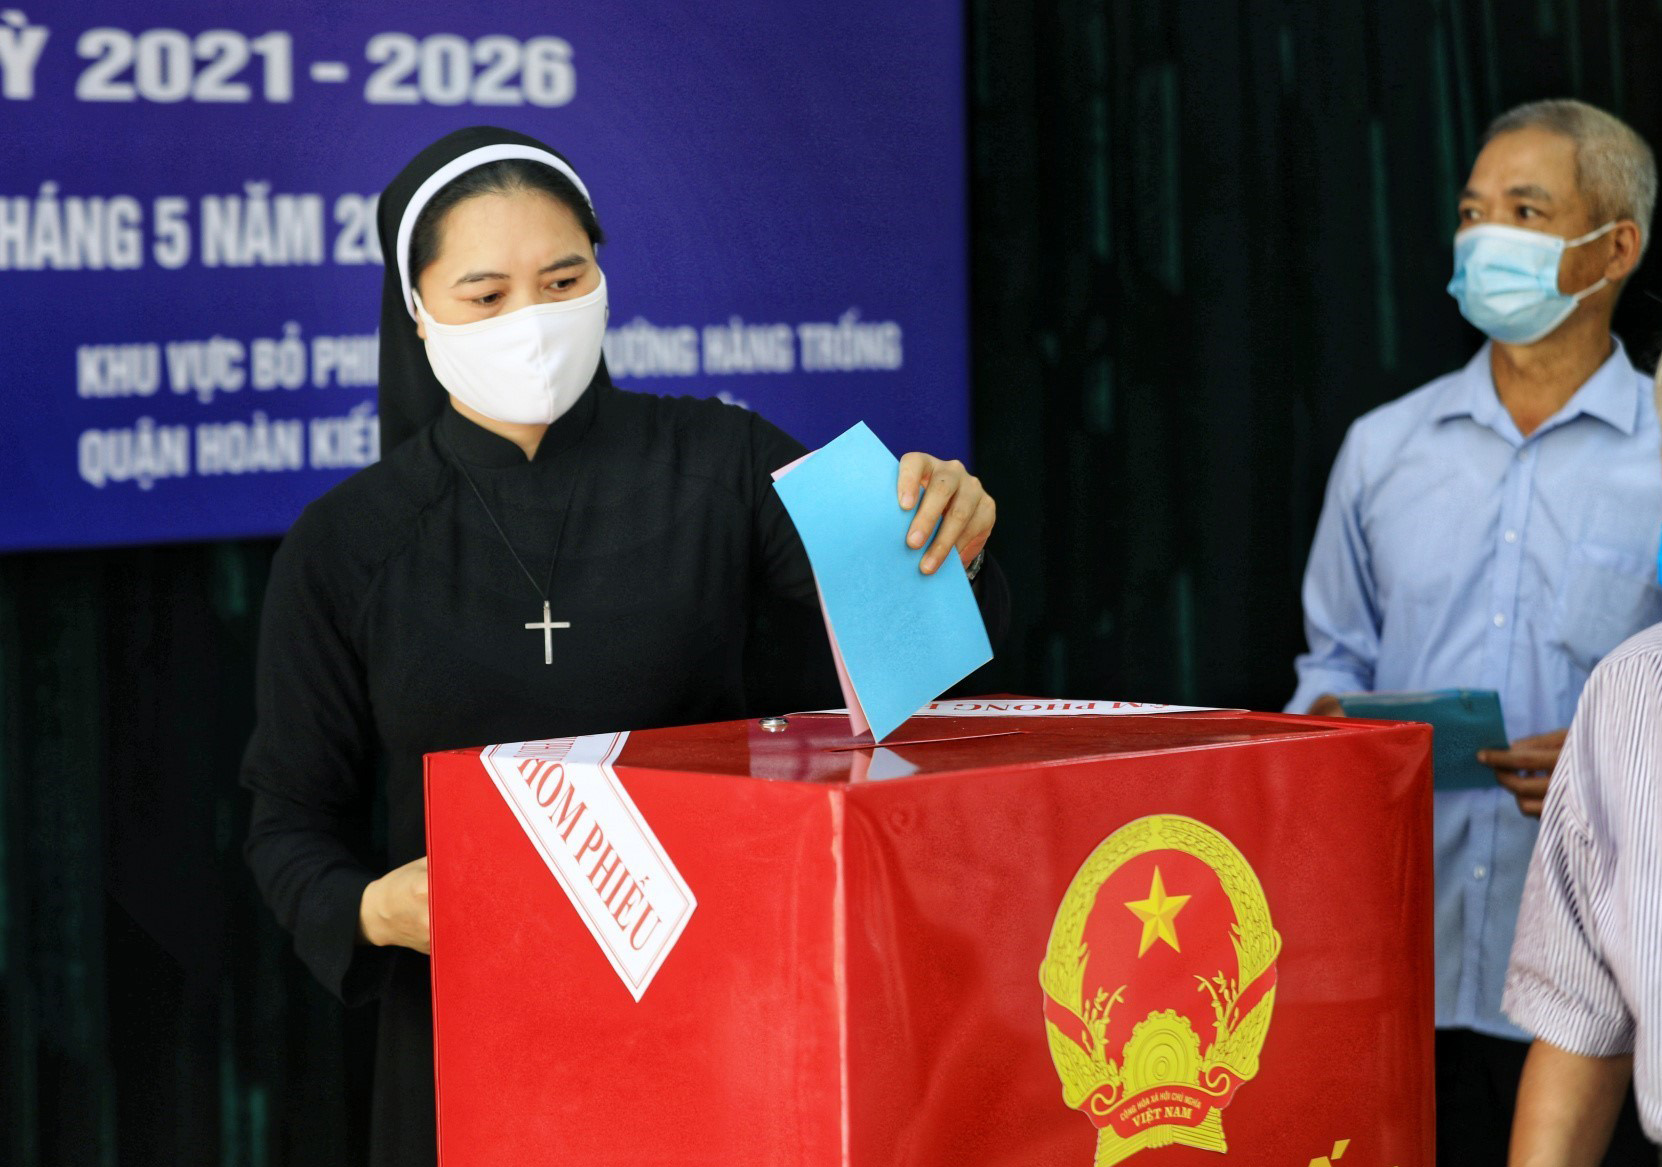 Các cử tri là đồng bào công giáo thuộc Giáo phận Hà Nội thực hiện quyền dân chủ của mình khi đi bỏ phiếu bầu cử đại biểu Quốc hội khóa XV và đại biểu hội đồng nhân dân các cấp nhiệm kỳ 2021 - 2026 _Ảnh: TTXVN